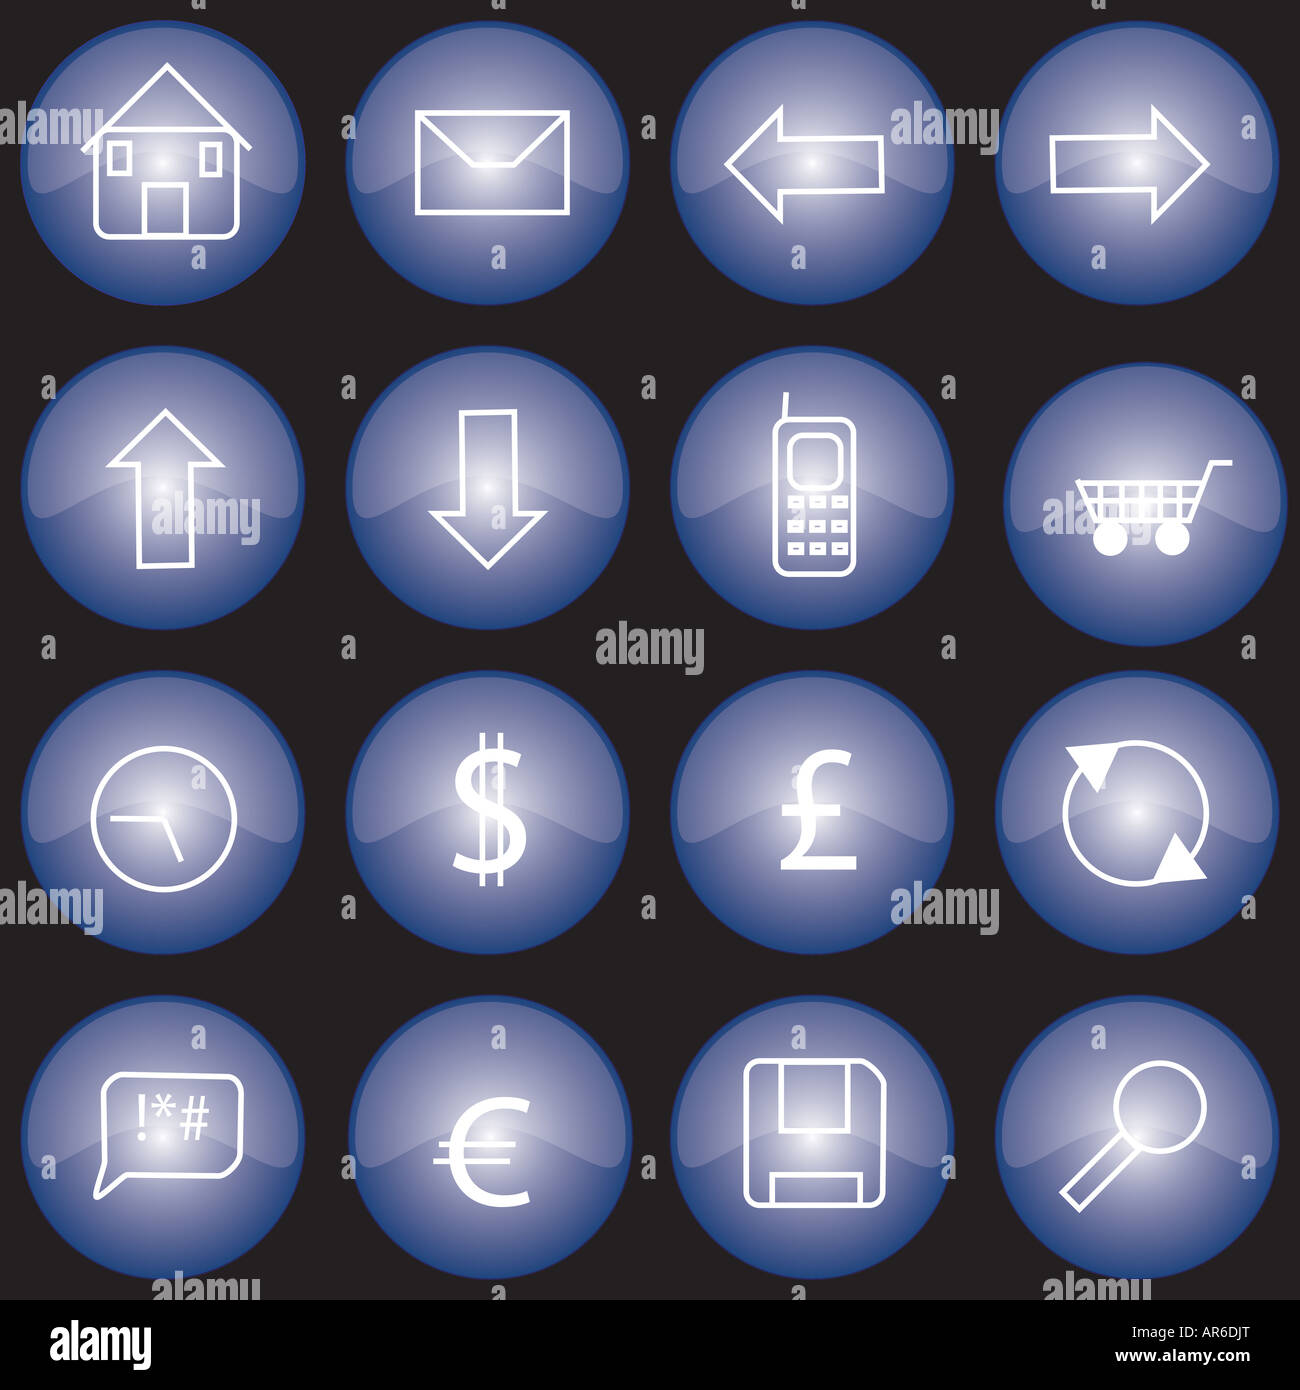 Collection de boutons ou icônes web avec finition émaillée bleue Banque D'Images